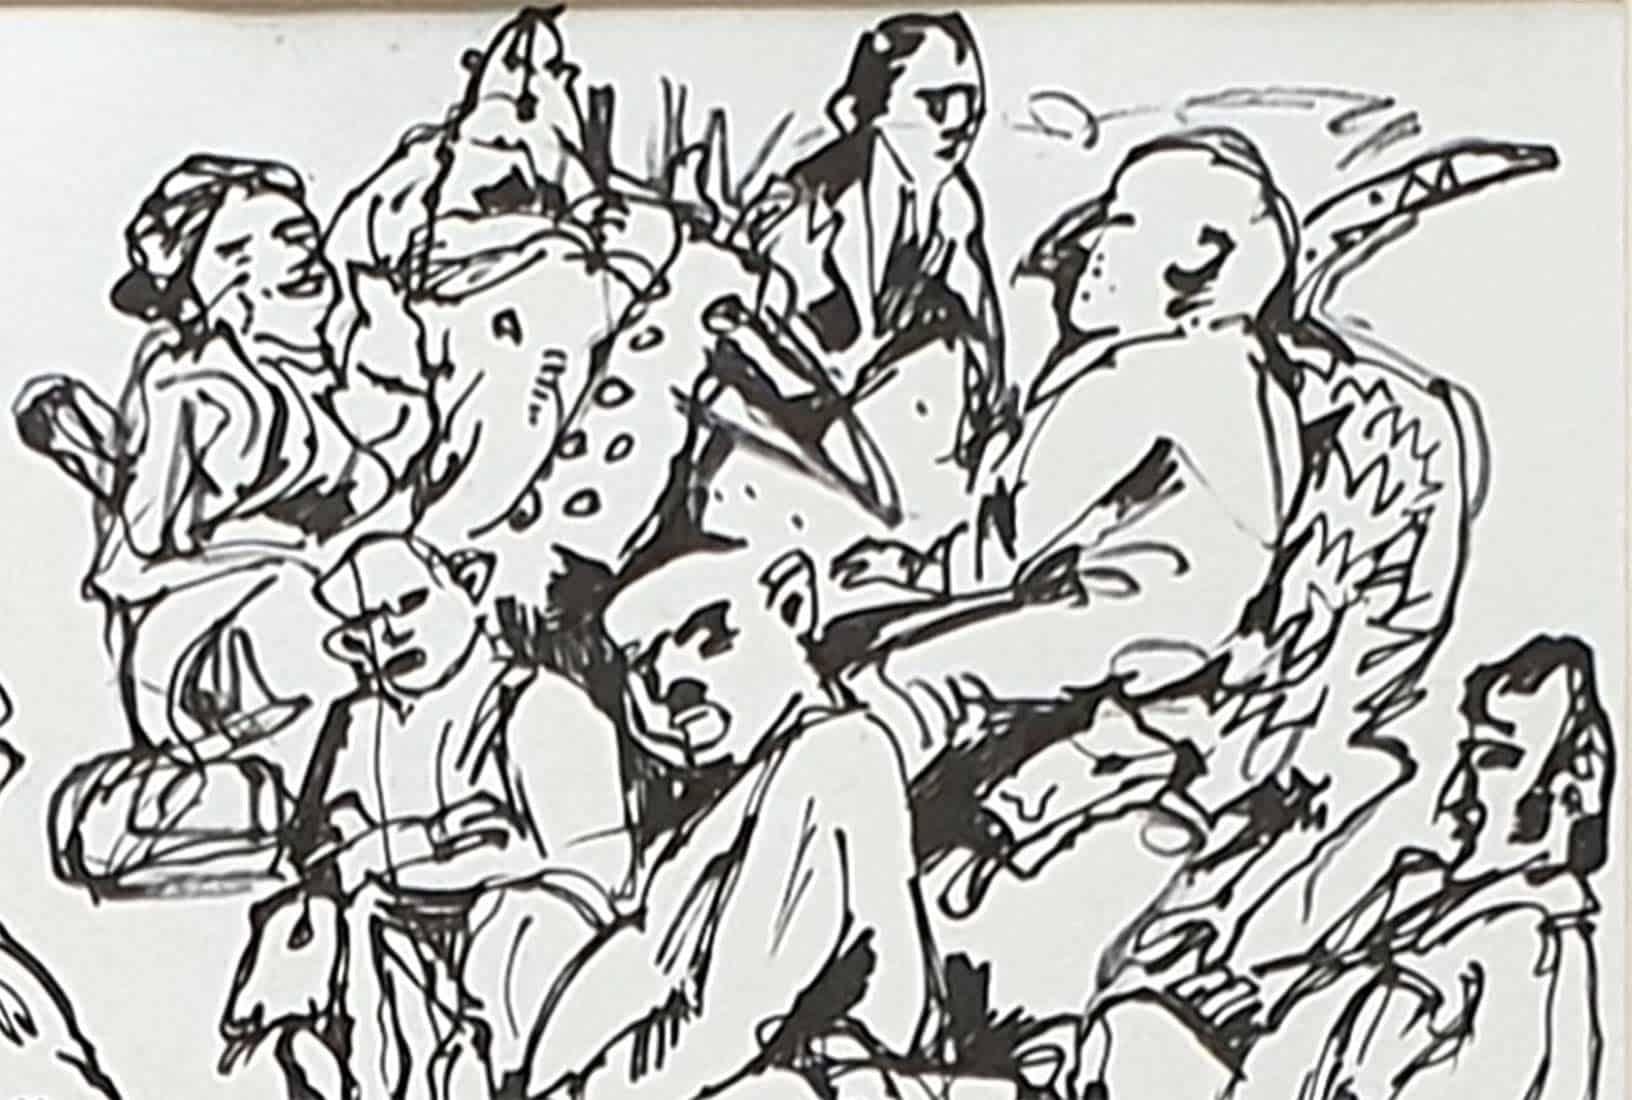 Ashoke Mullick - Sans titre - 9.25 x 12.25 pouces (taille non encadrée)
Encre sur papier
Y compris l'expédition en rouleau.

Style : Ashoke Mullick est considéré comme l'un des principaux peintres de l'école d'art du Bengale. Mullick combine un sens